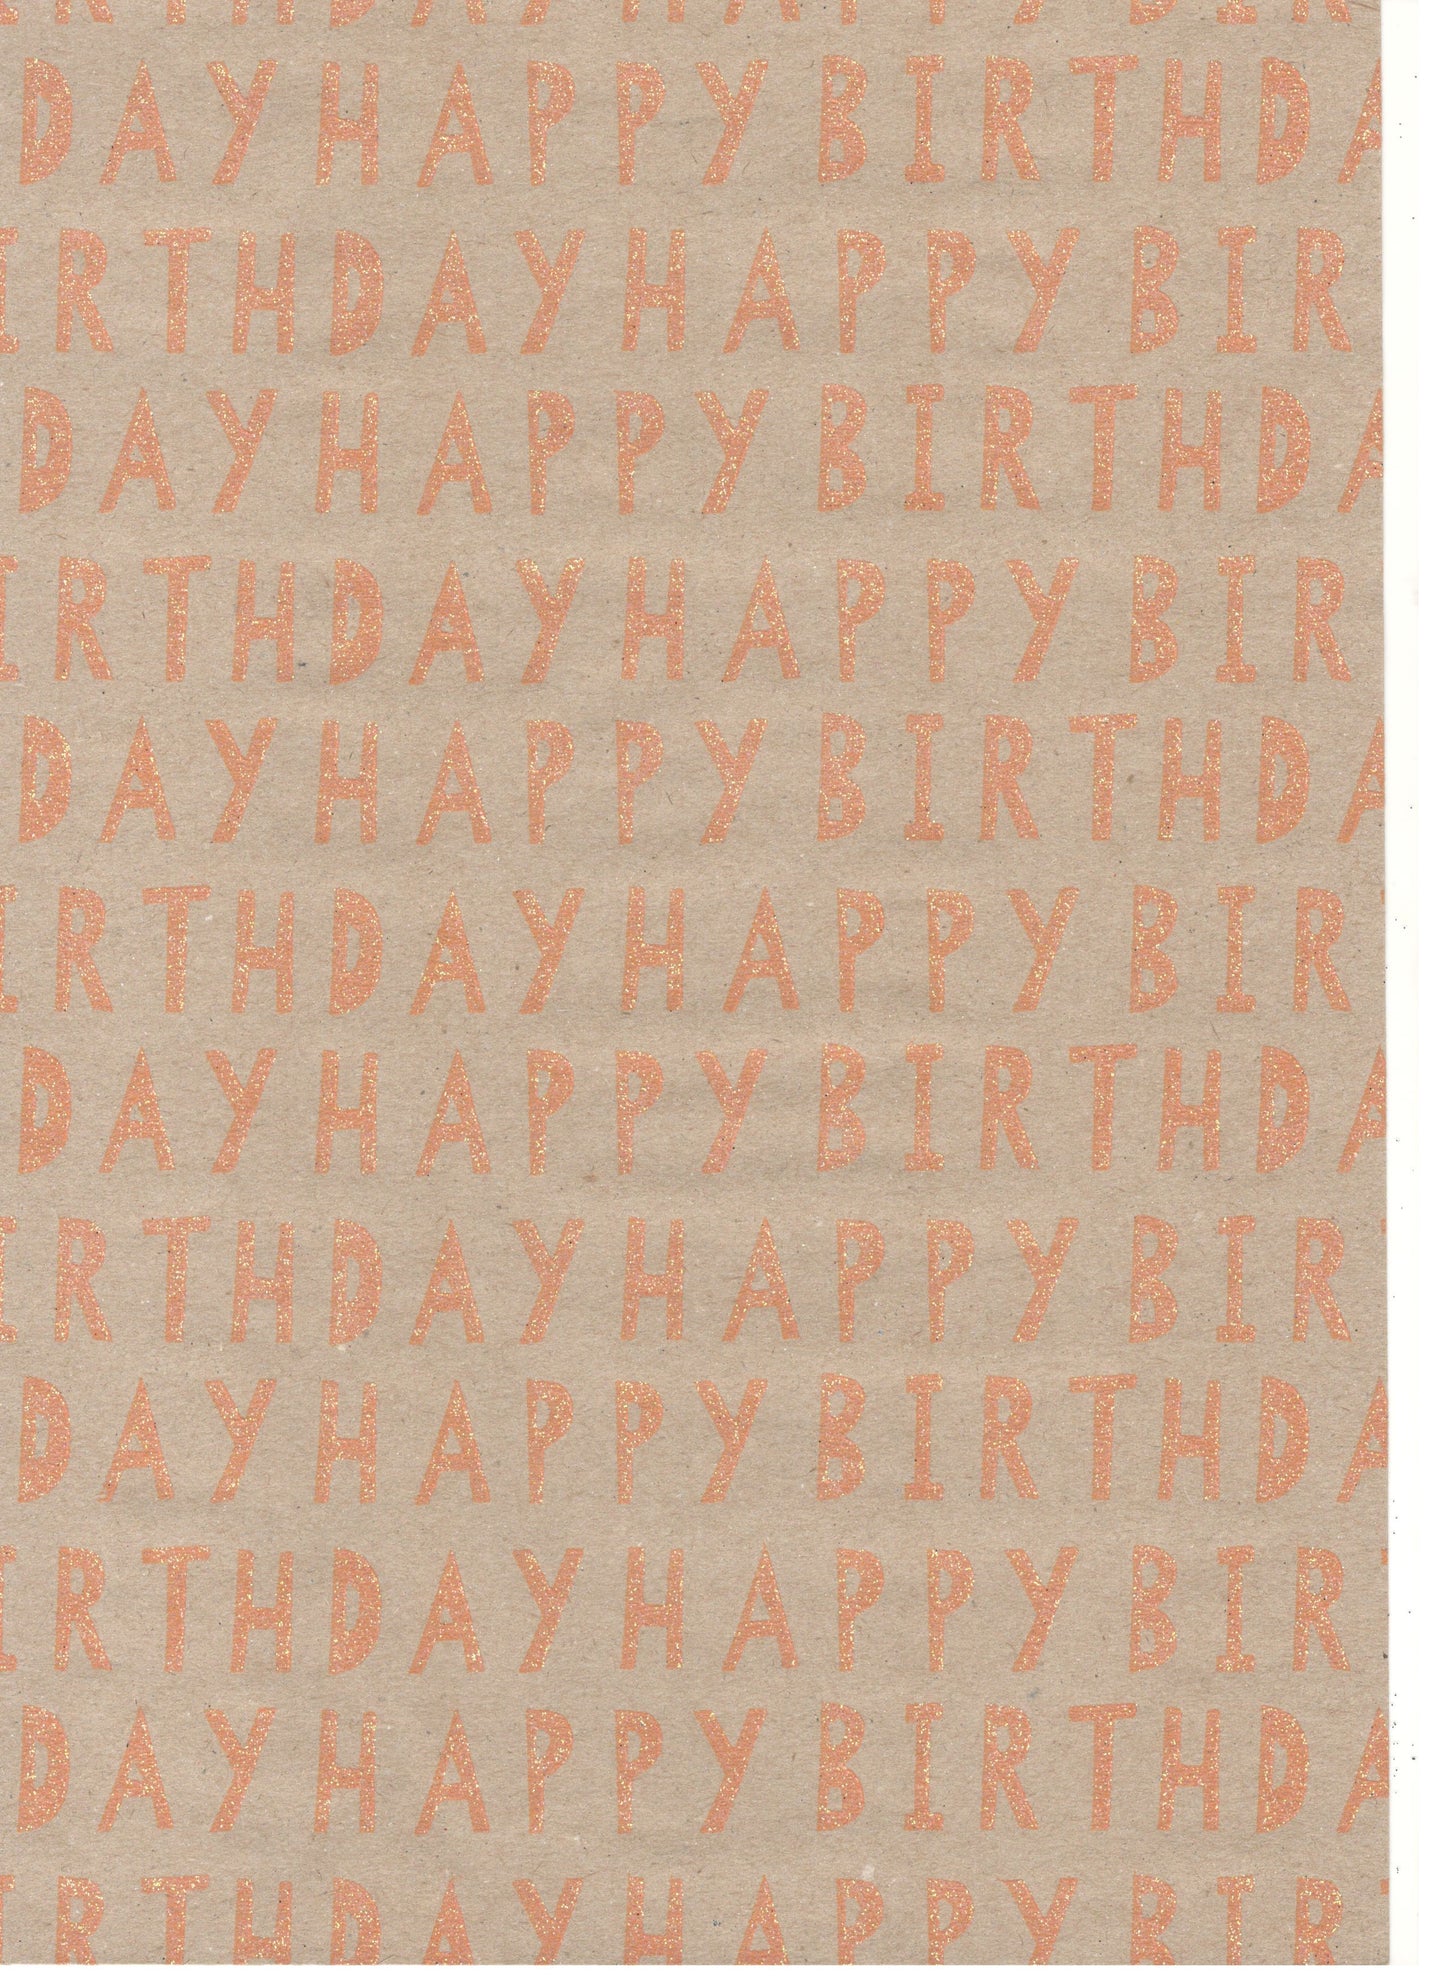 Kraft découpé joyeux anniversaire orange